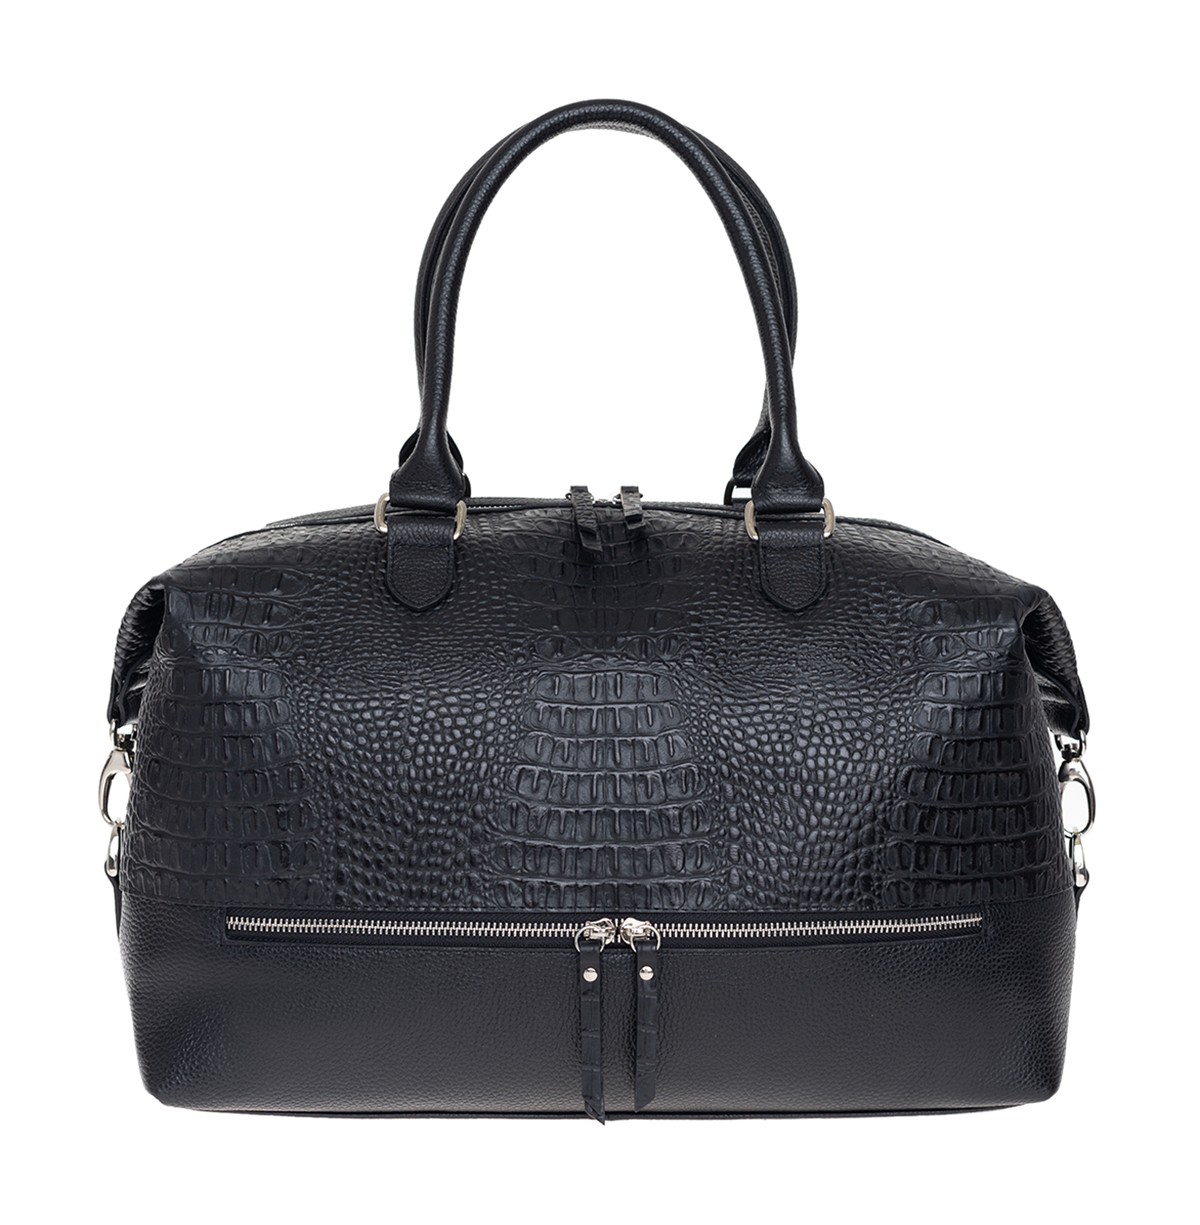 Дорожная сумка унисекс Franchesco Mariscotti 6-432 черная, 42x28x24 см